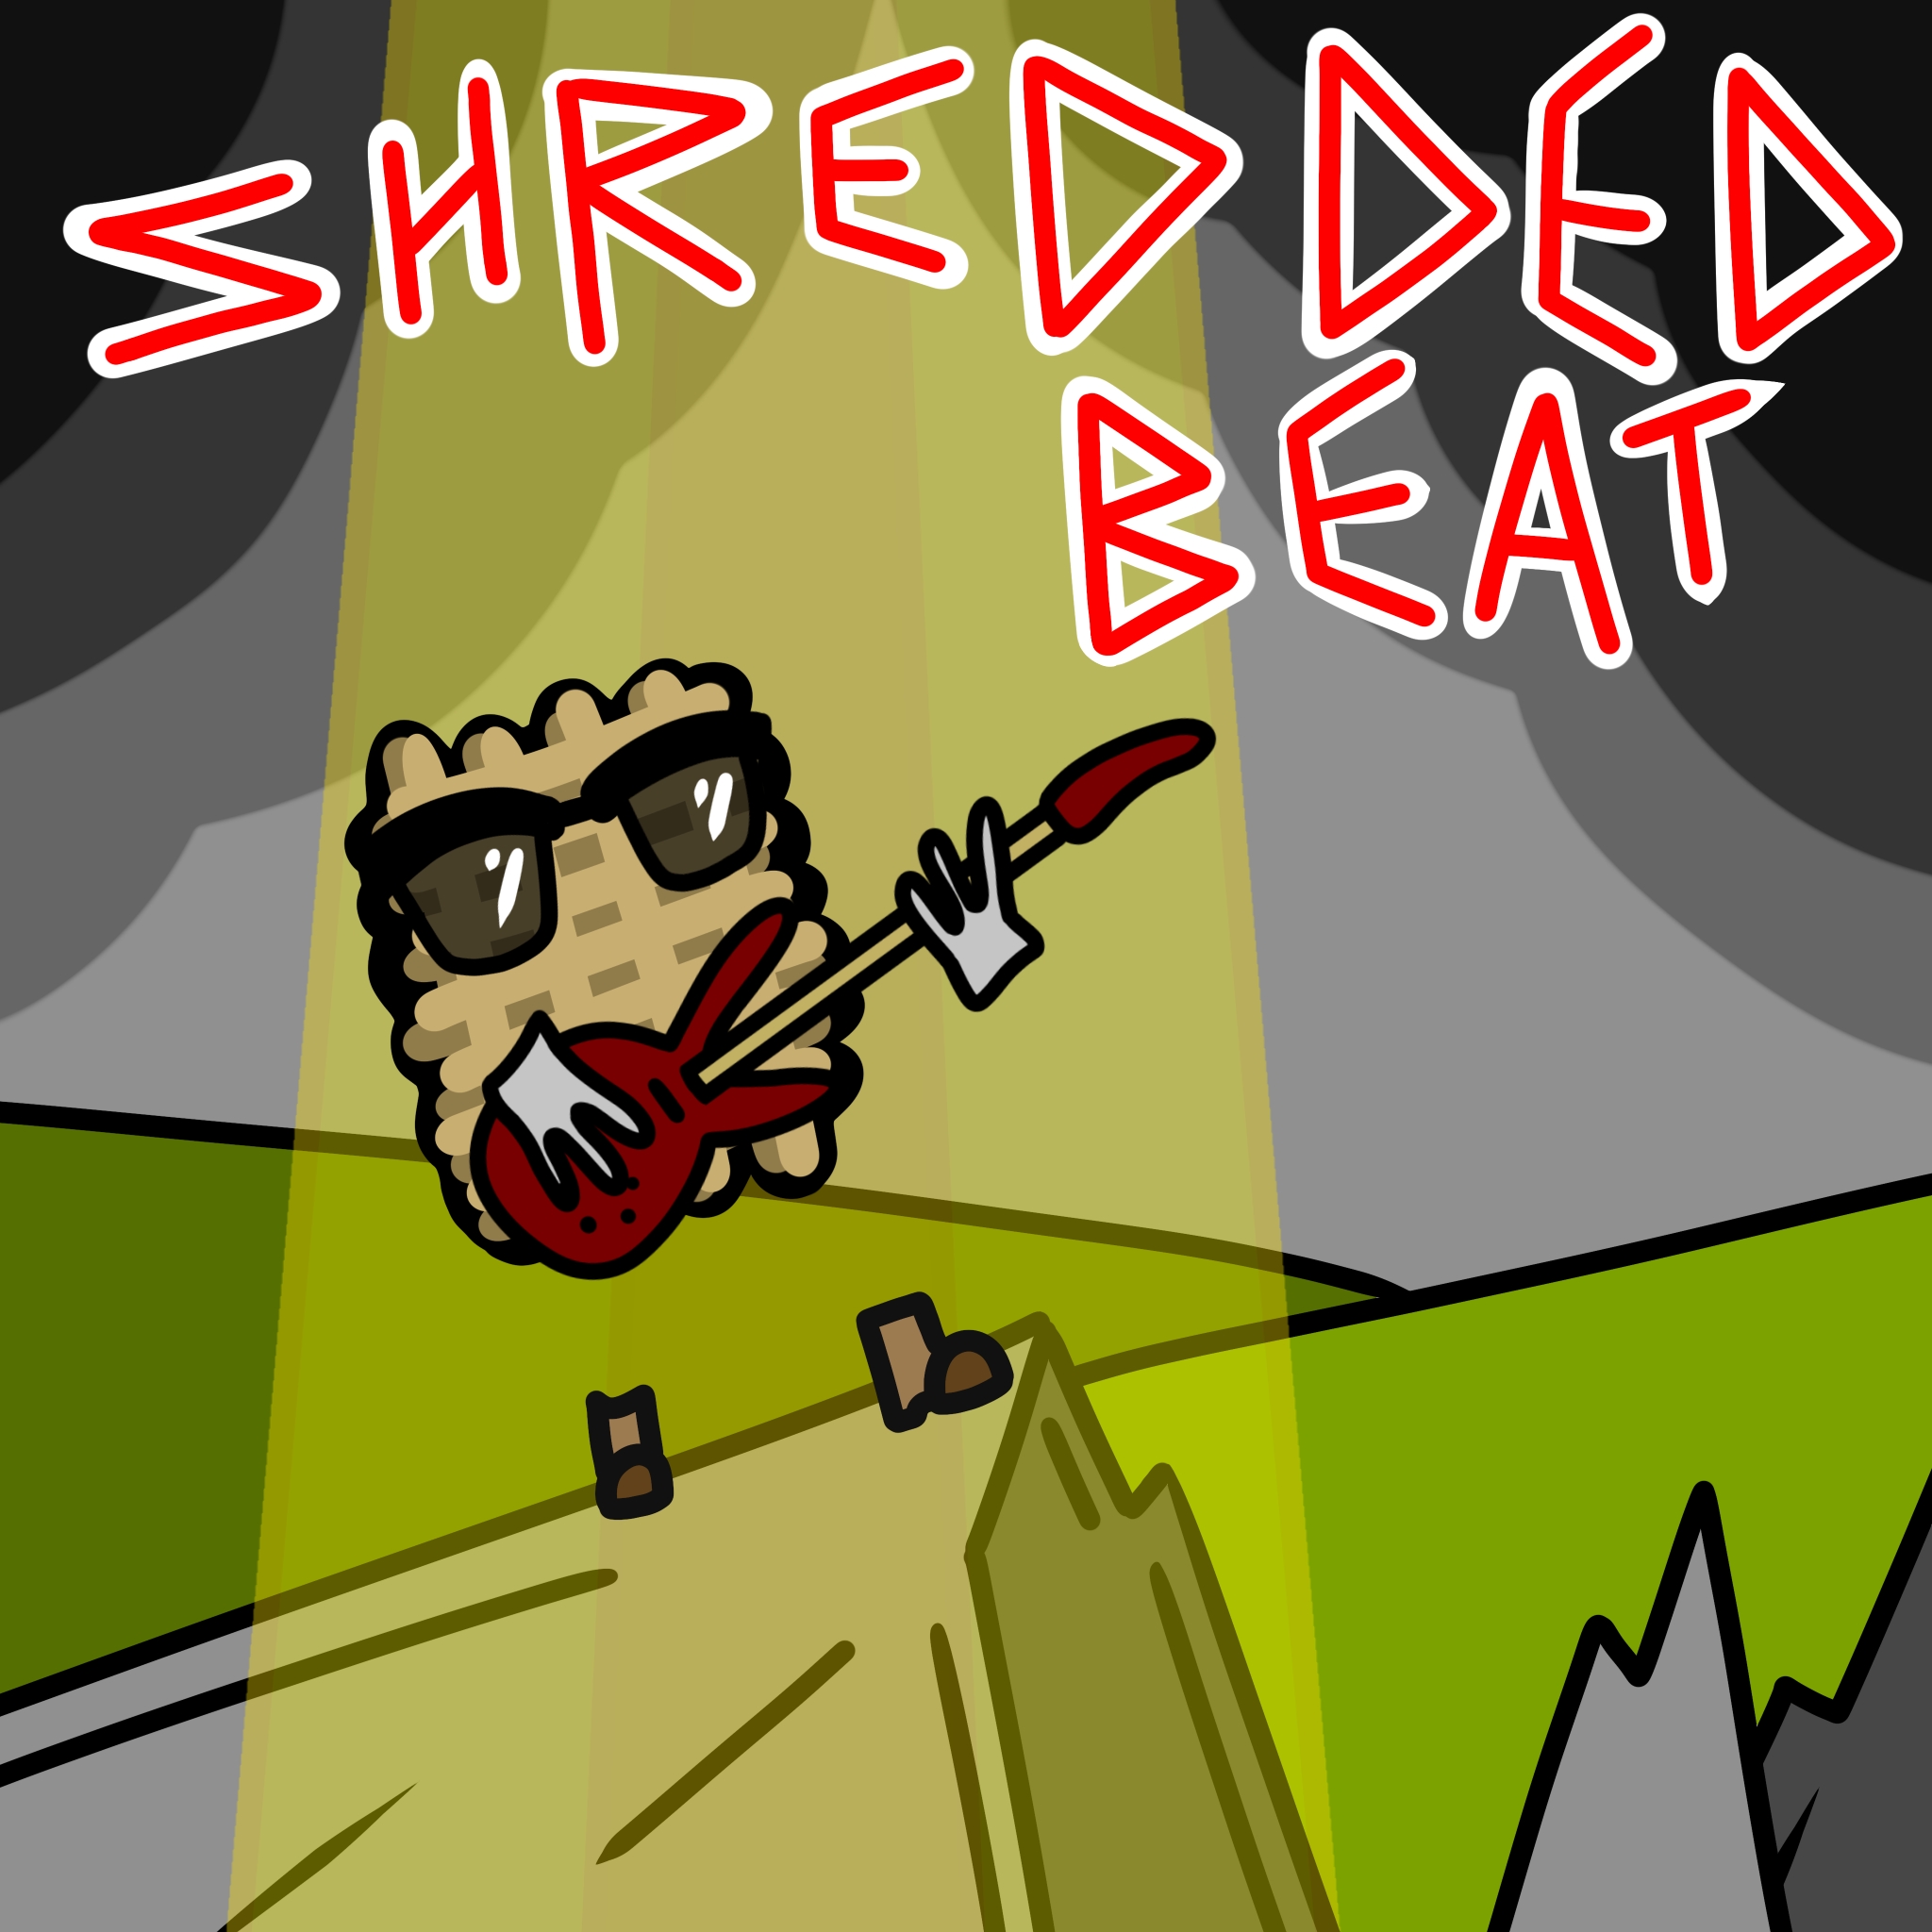 Shredded-Beat Breakfast Show! logo.